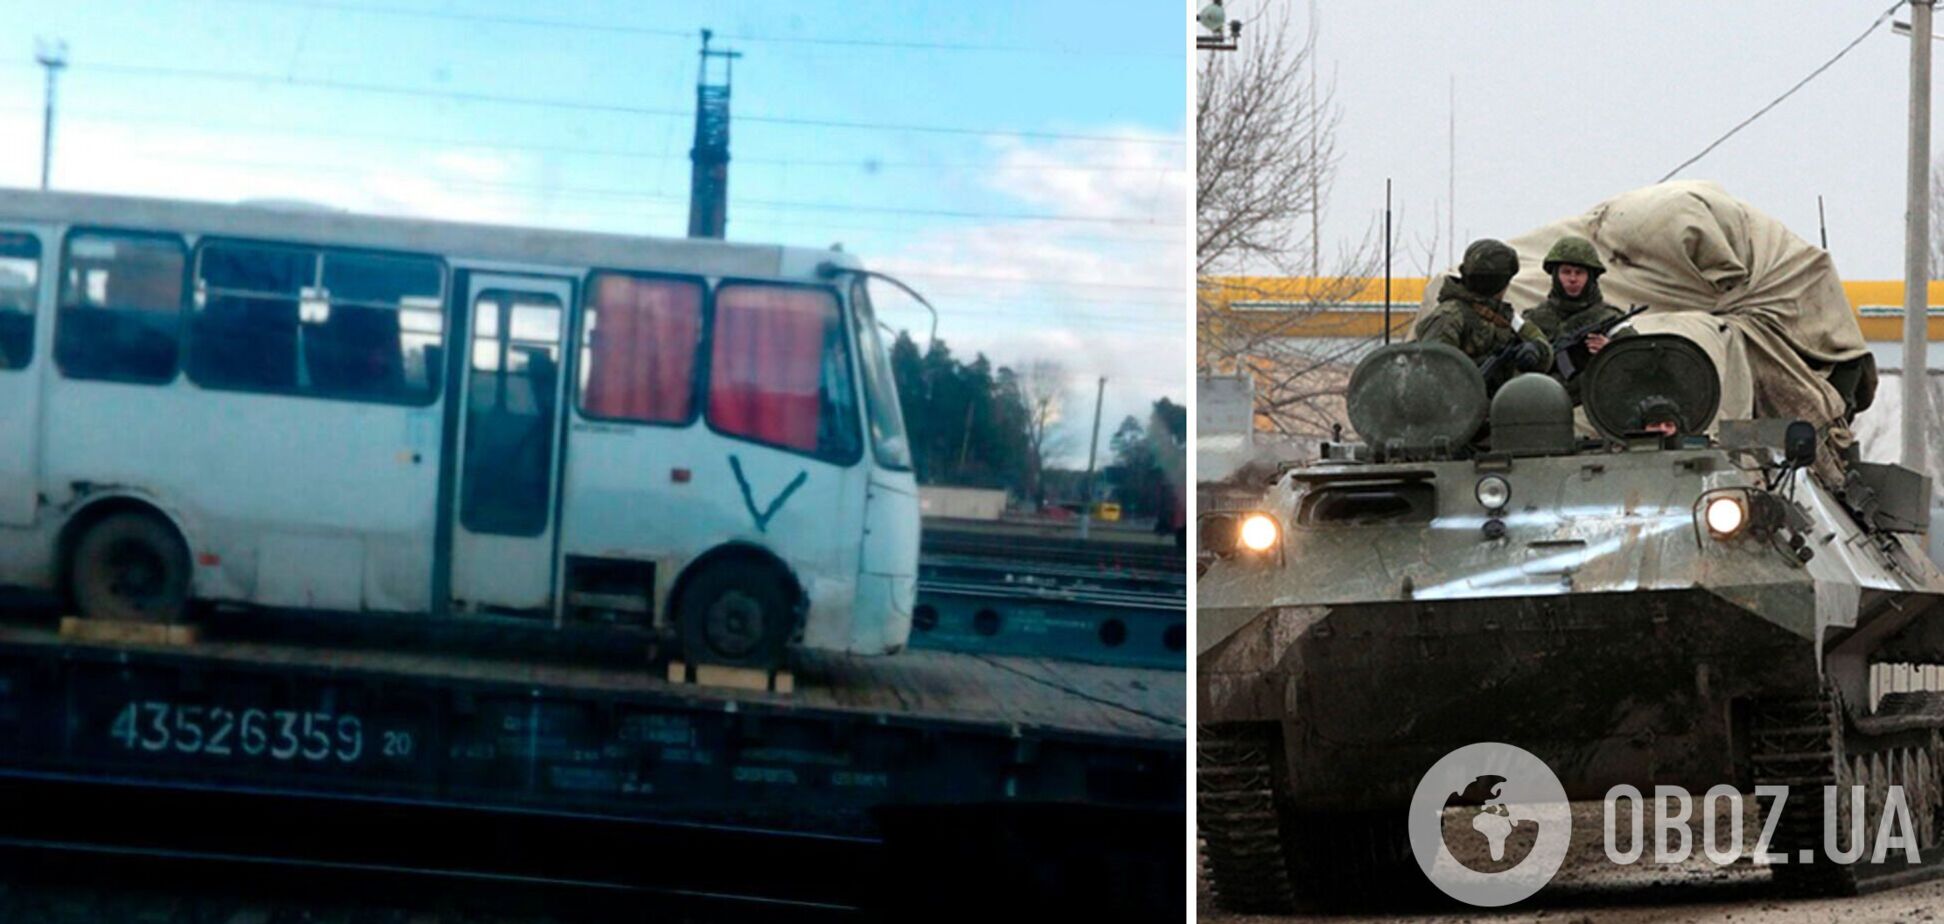 В Минске заметили маршрутку, которую российские оккупанты угнали в Украине. Фото